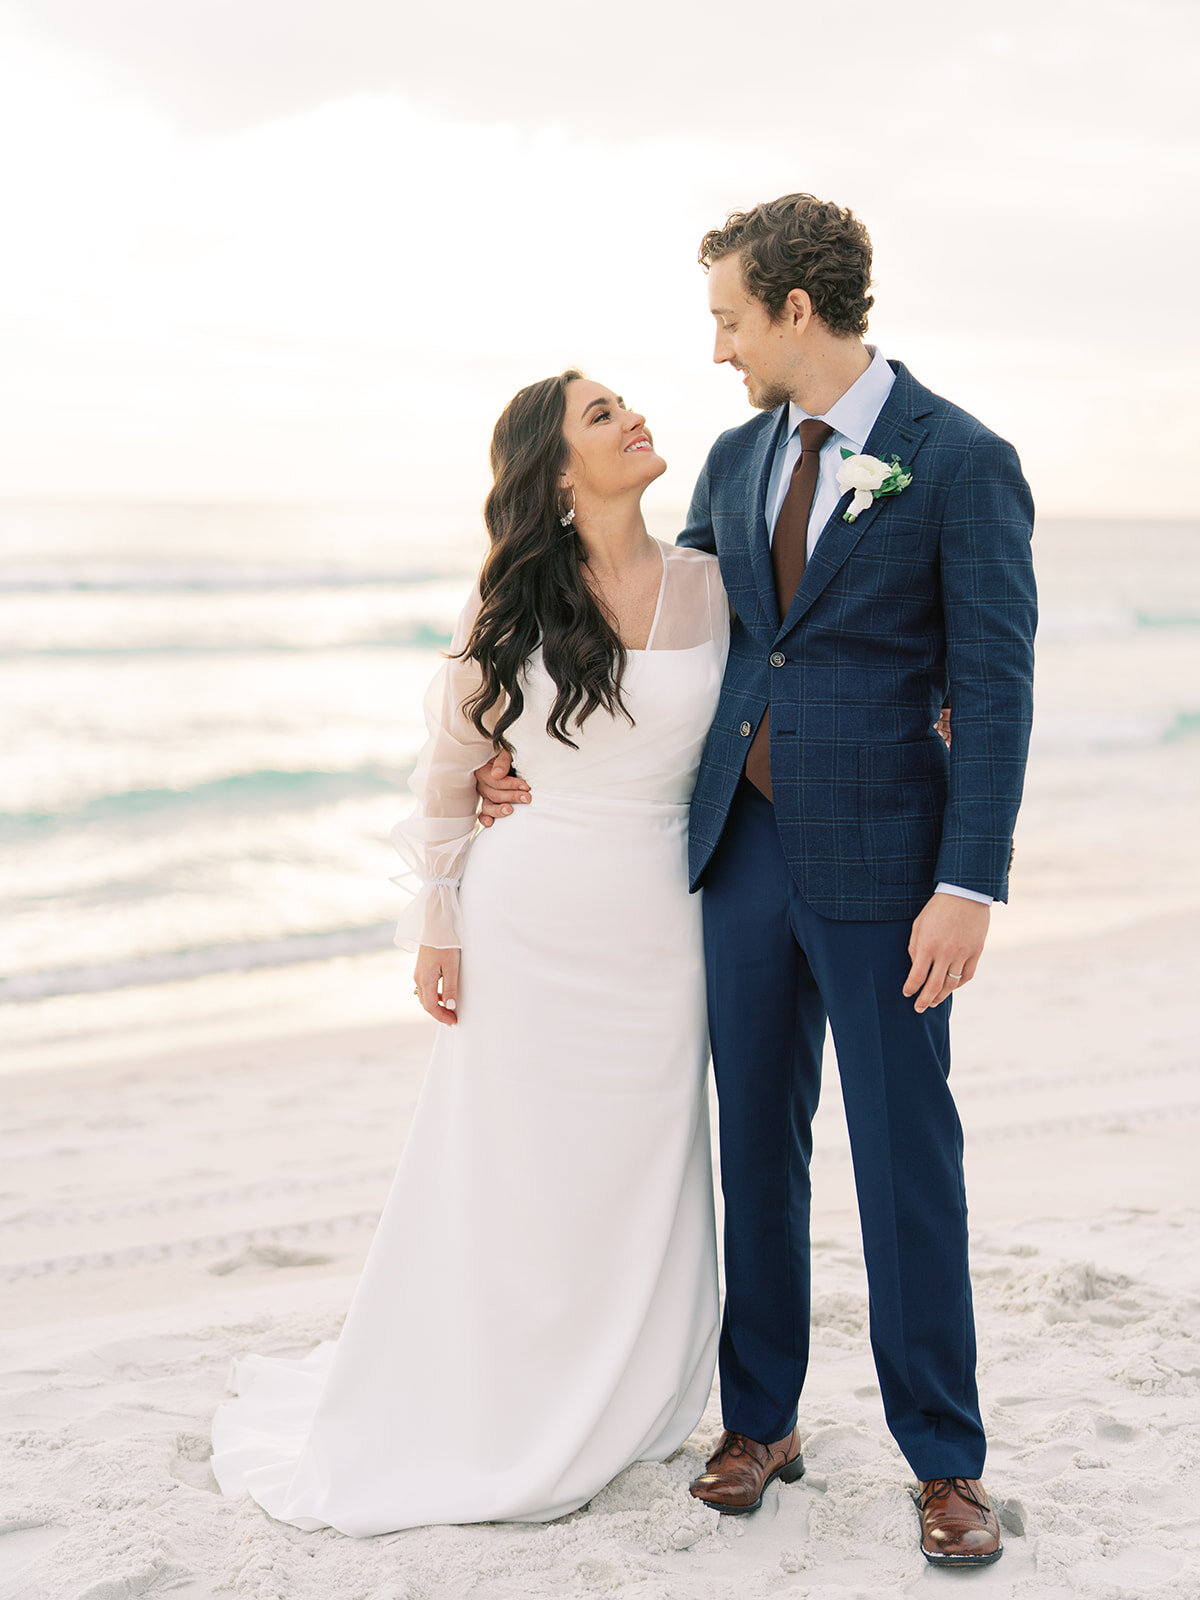 Alys-Beach-Wedding-Photographer-Rosemary-30a-Florida17.JPG